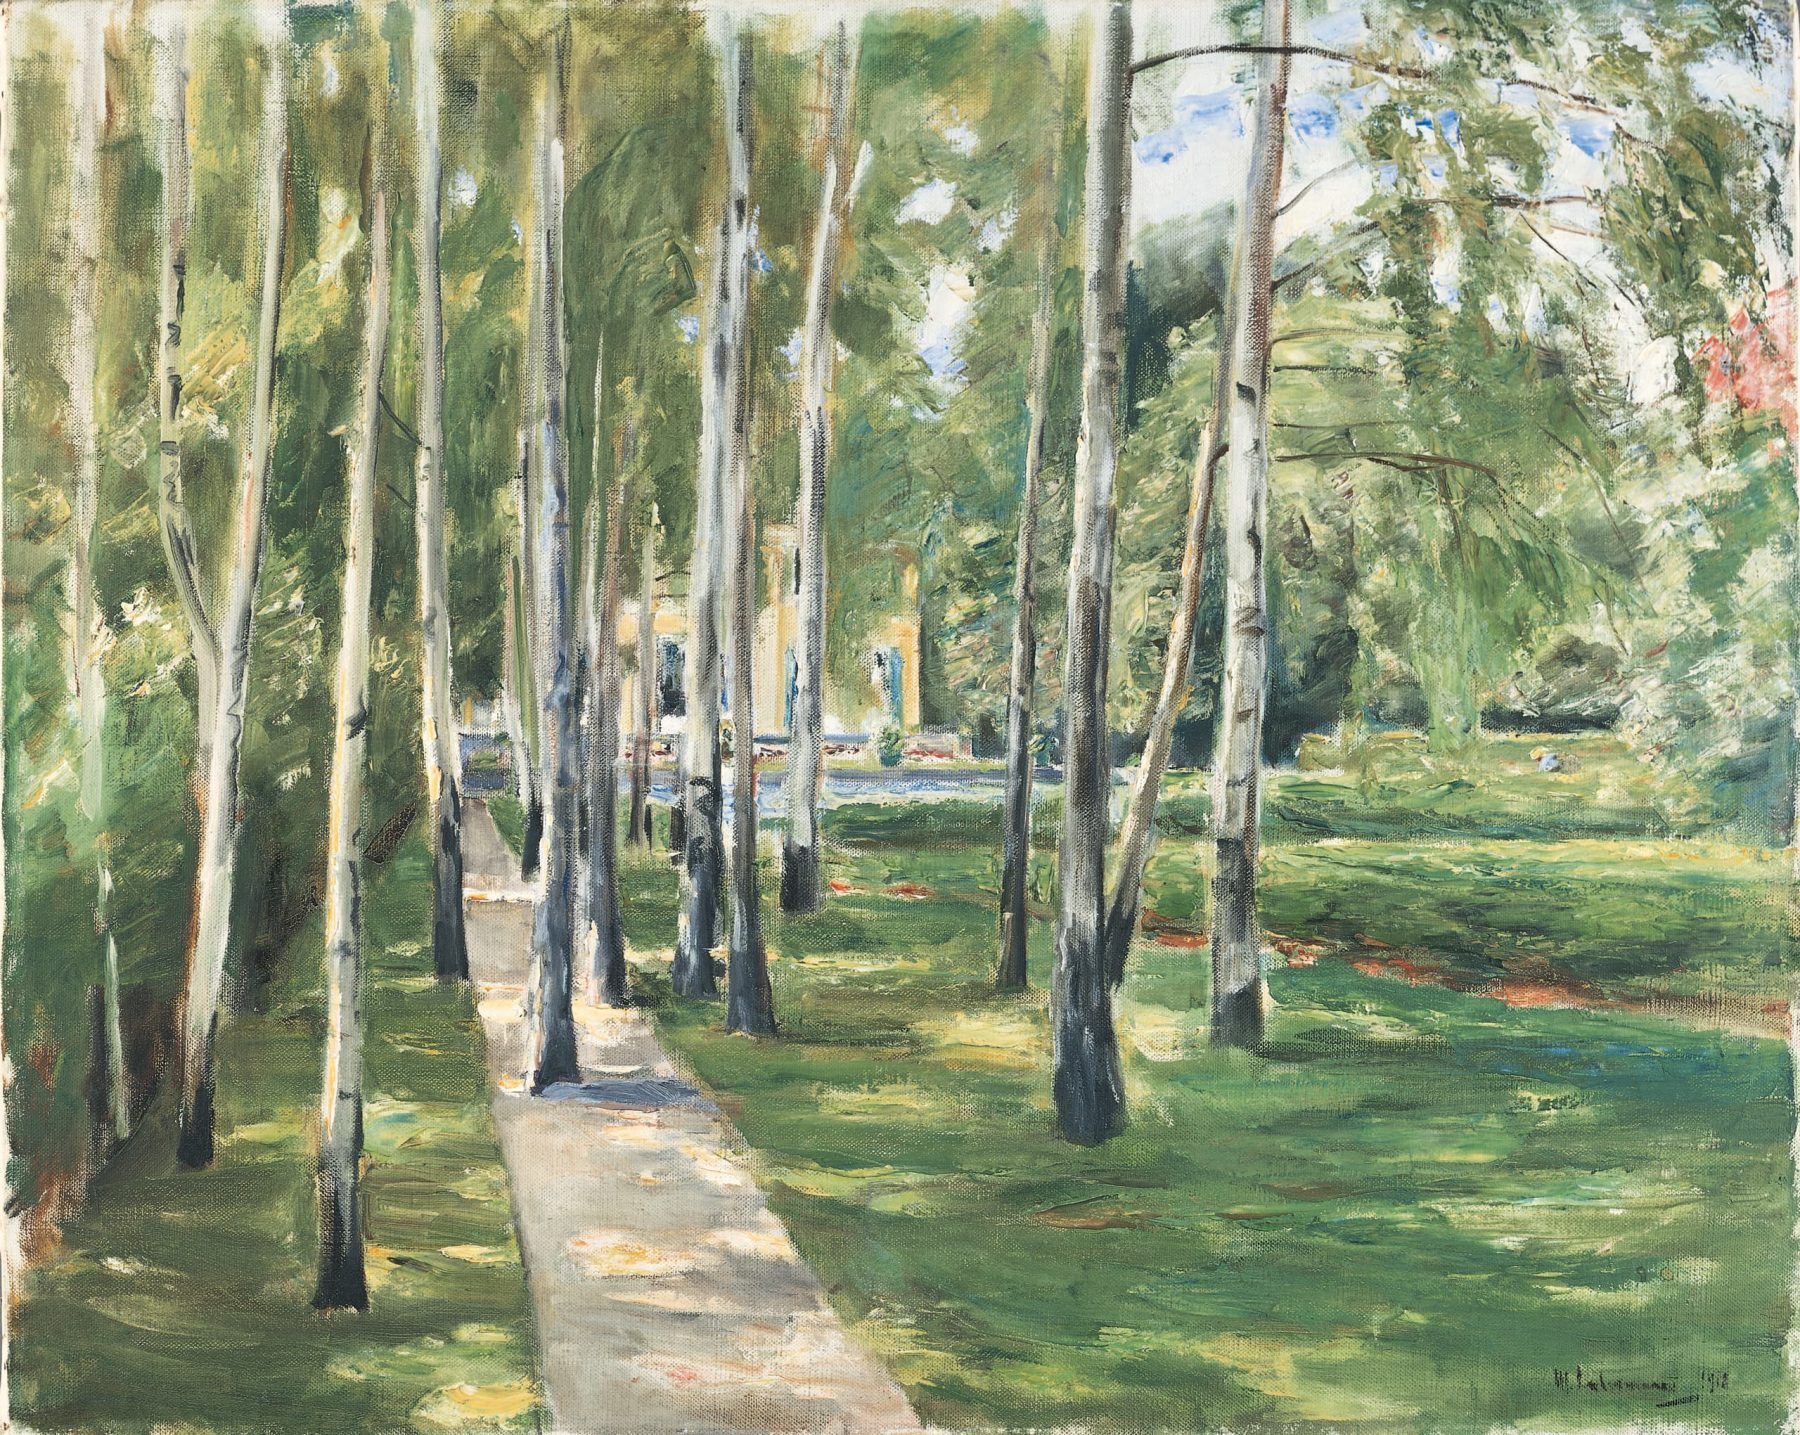 Gemälde des Birkenwegs mit hellen Farben, grüner Wiese und im Hintergrund die Liebermann-Villa.